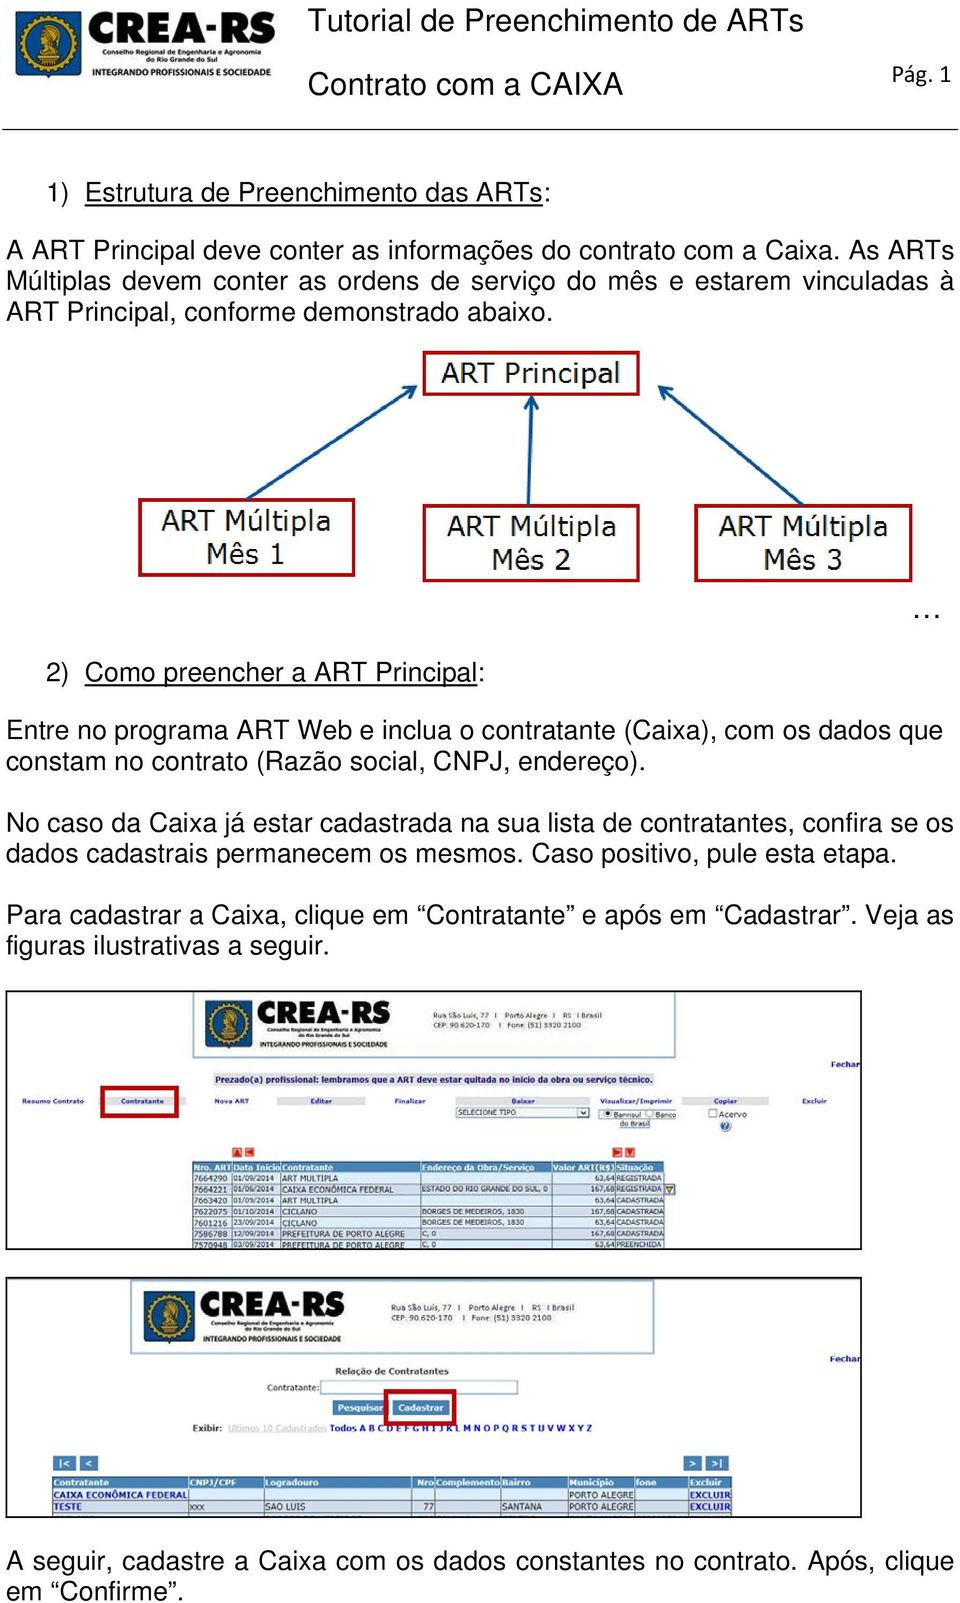 2) Como preencher a ART Principal: Entre no programa ART Web e inclua o contratante (Caixa), com os dados que constam no contrato (Razão social, CNPJ, endereço).